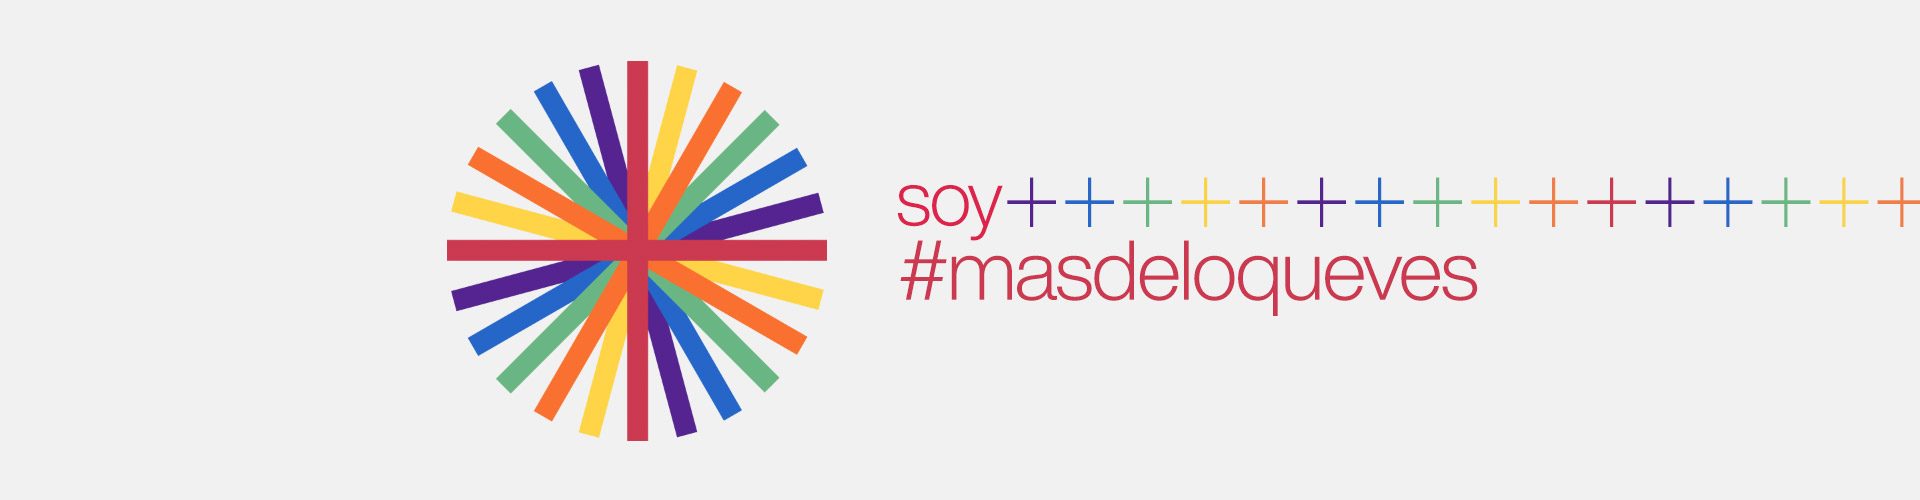 Actividades Semana del Ogullo LGBTIQA+ #masdeloqueves